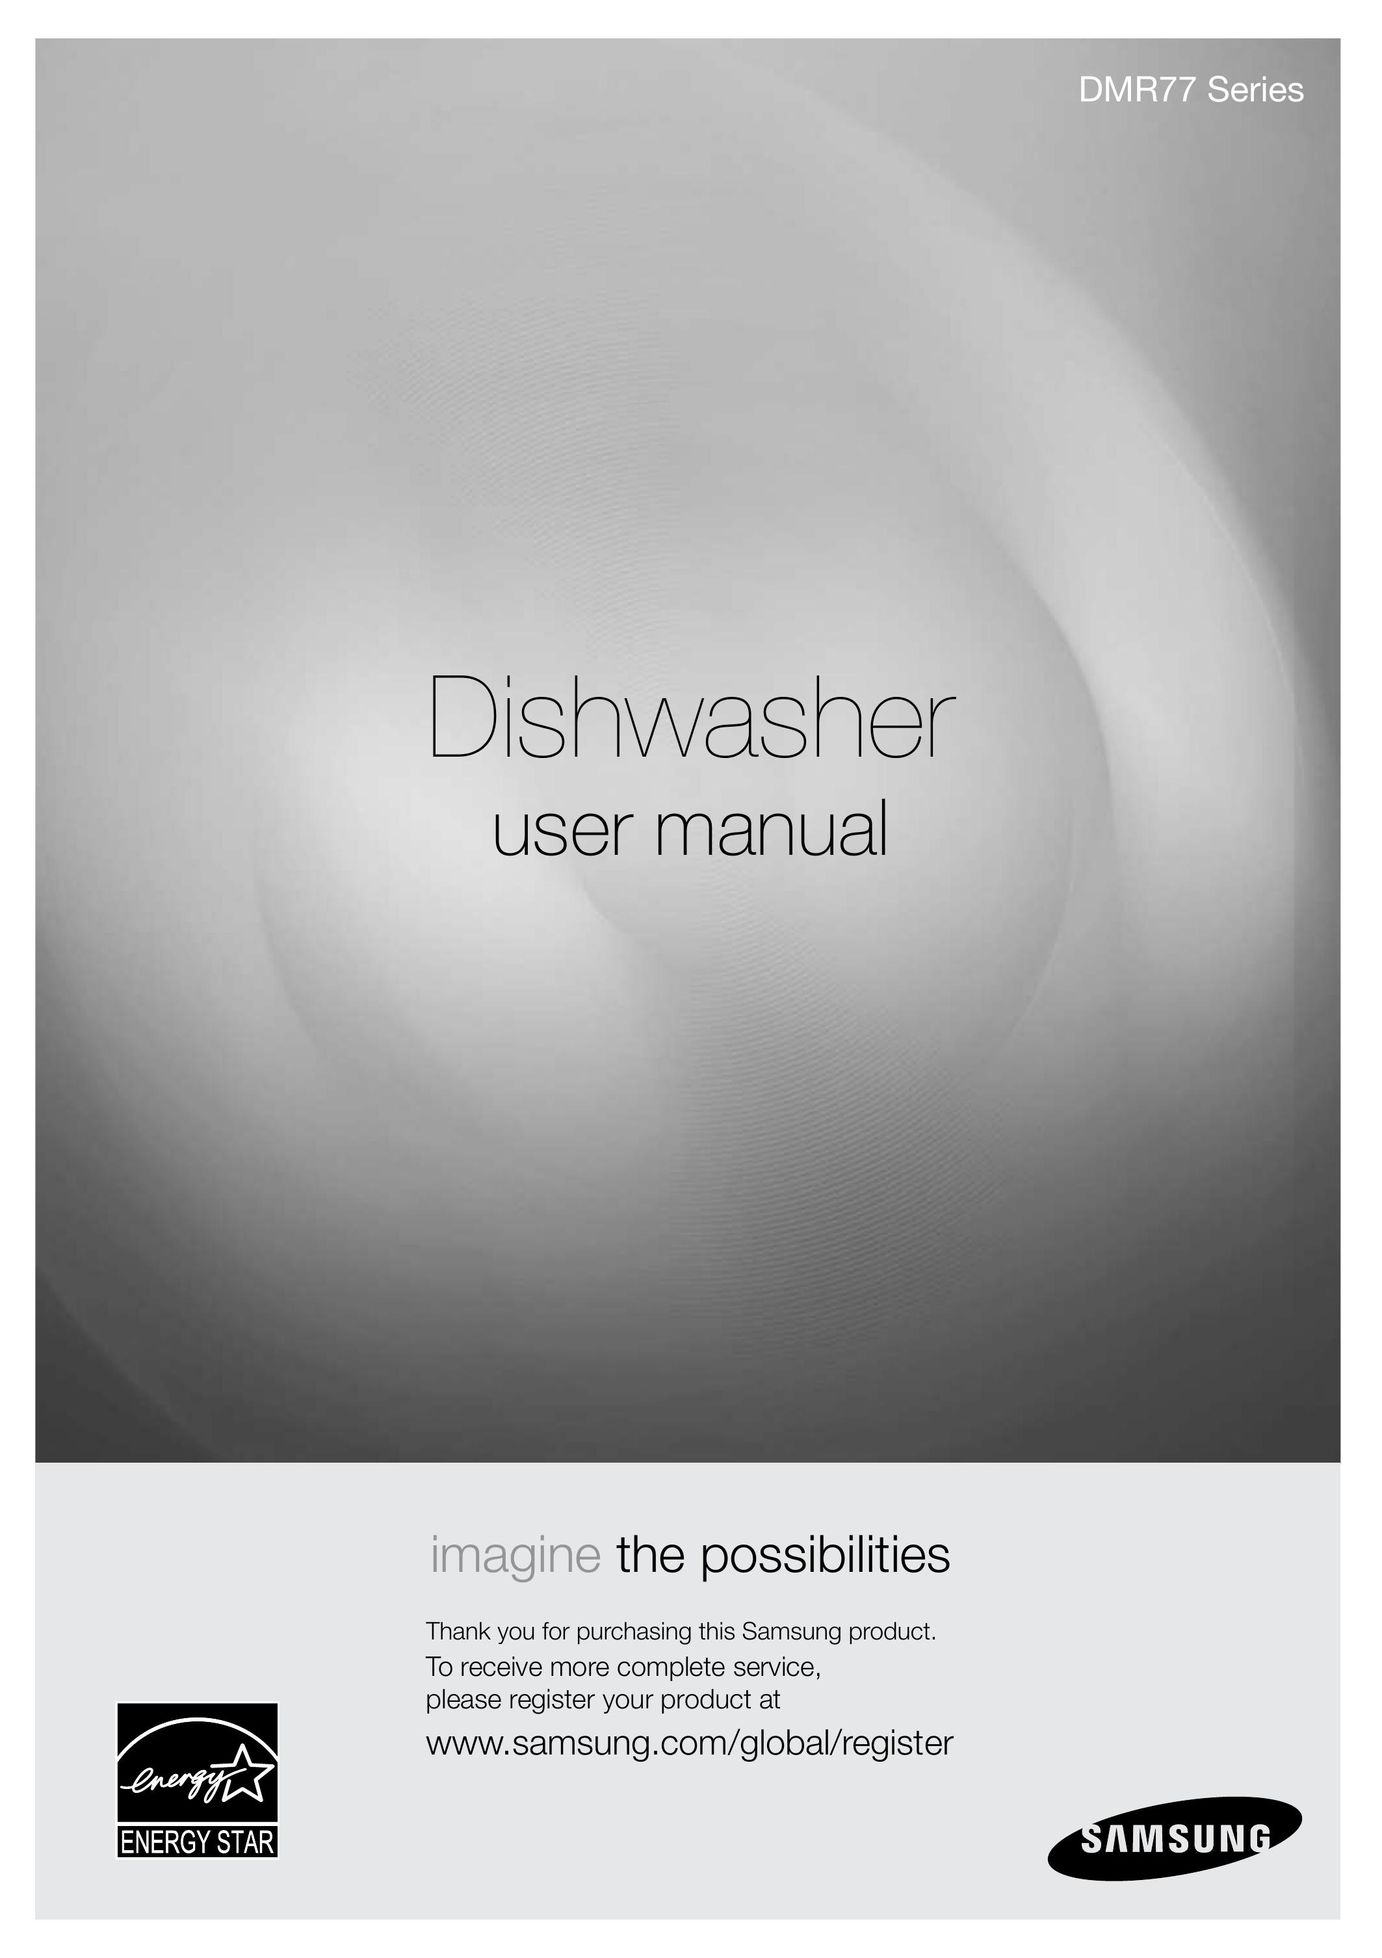 Samsung DMRLHW Dishwasher User Manual